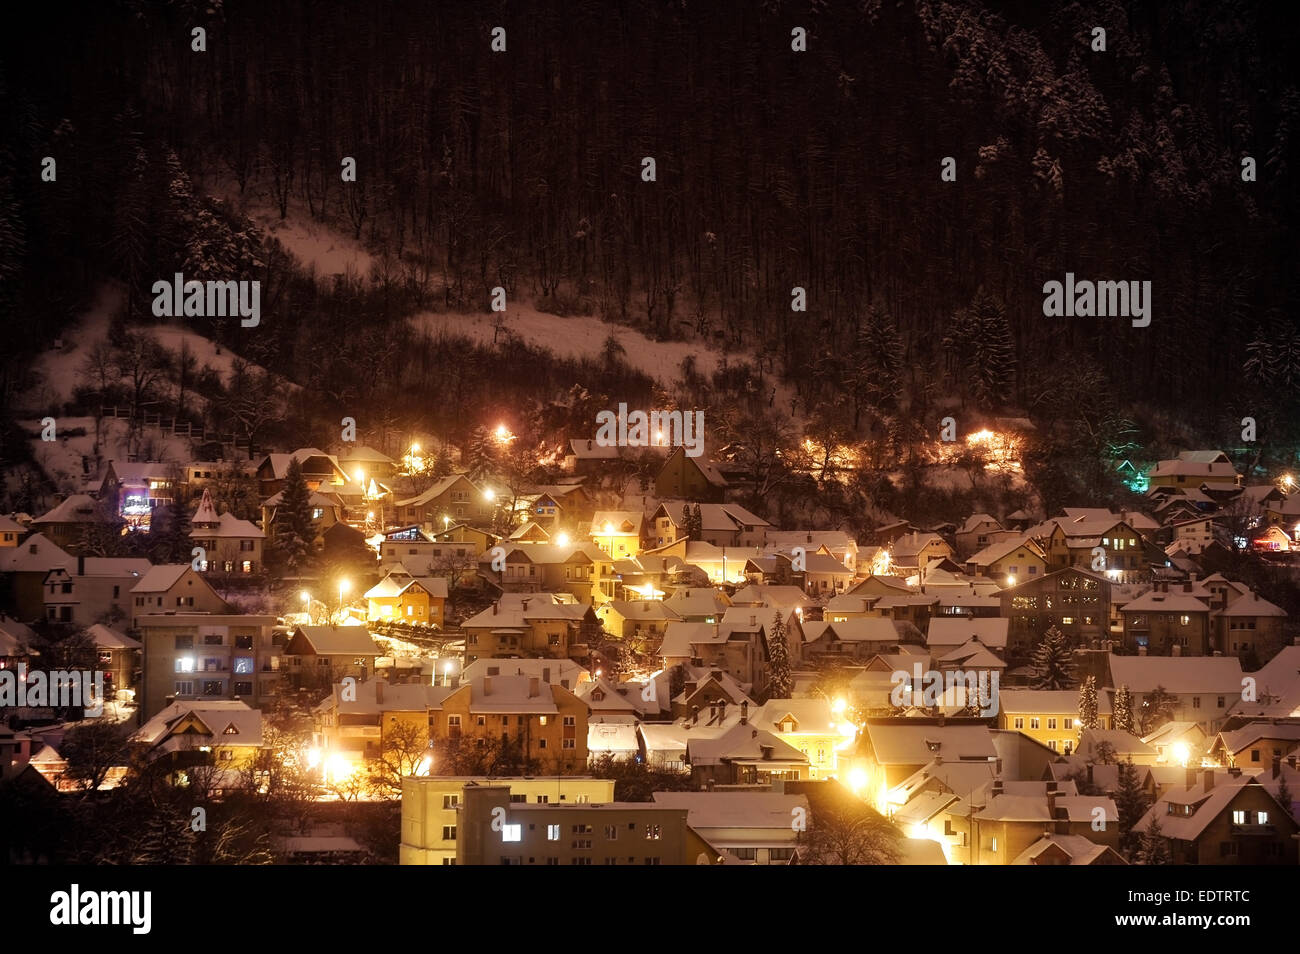 Noche de invierno hermosa escena con viejas casas cubiertas de nieve cerca de un bosque Foto de stock